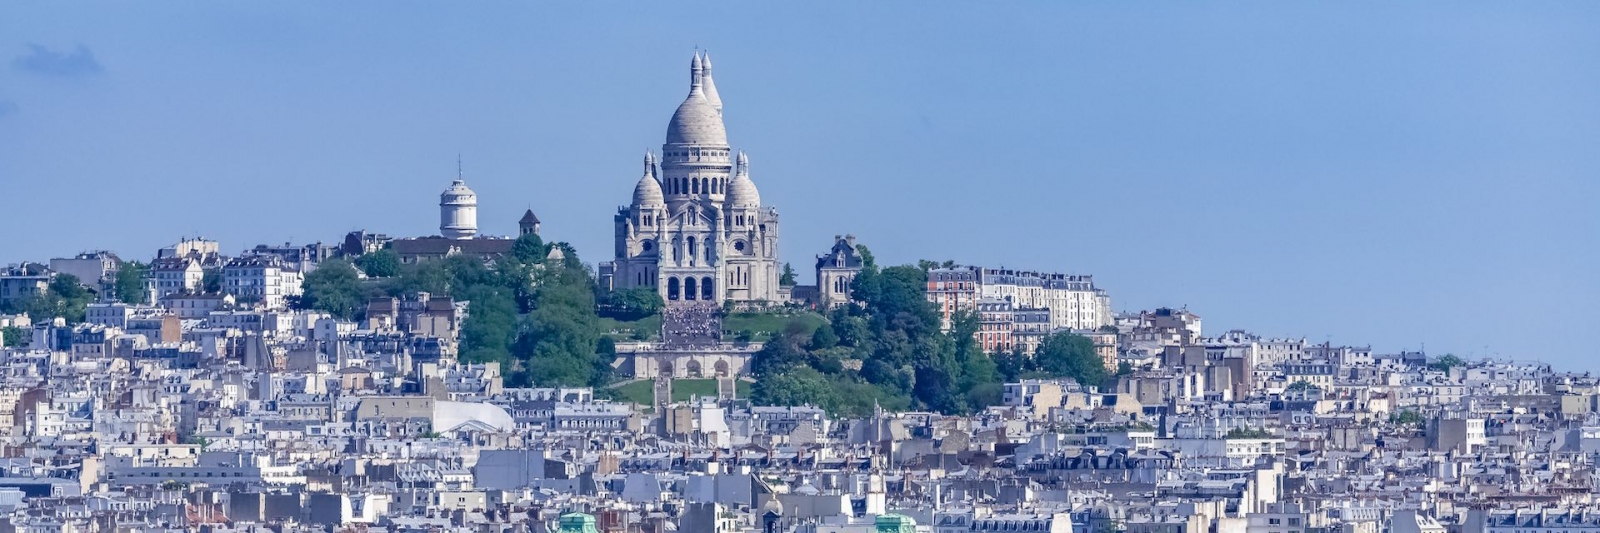 París, panorama de la ciudad, tejados y edificios típicos, con Montmartre y la basílica del Sacré-Choeur al fondo